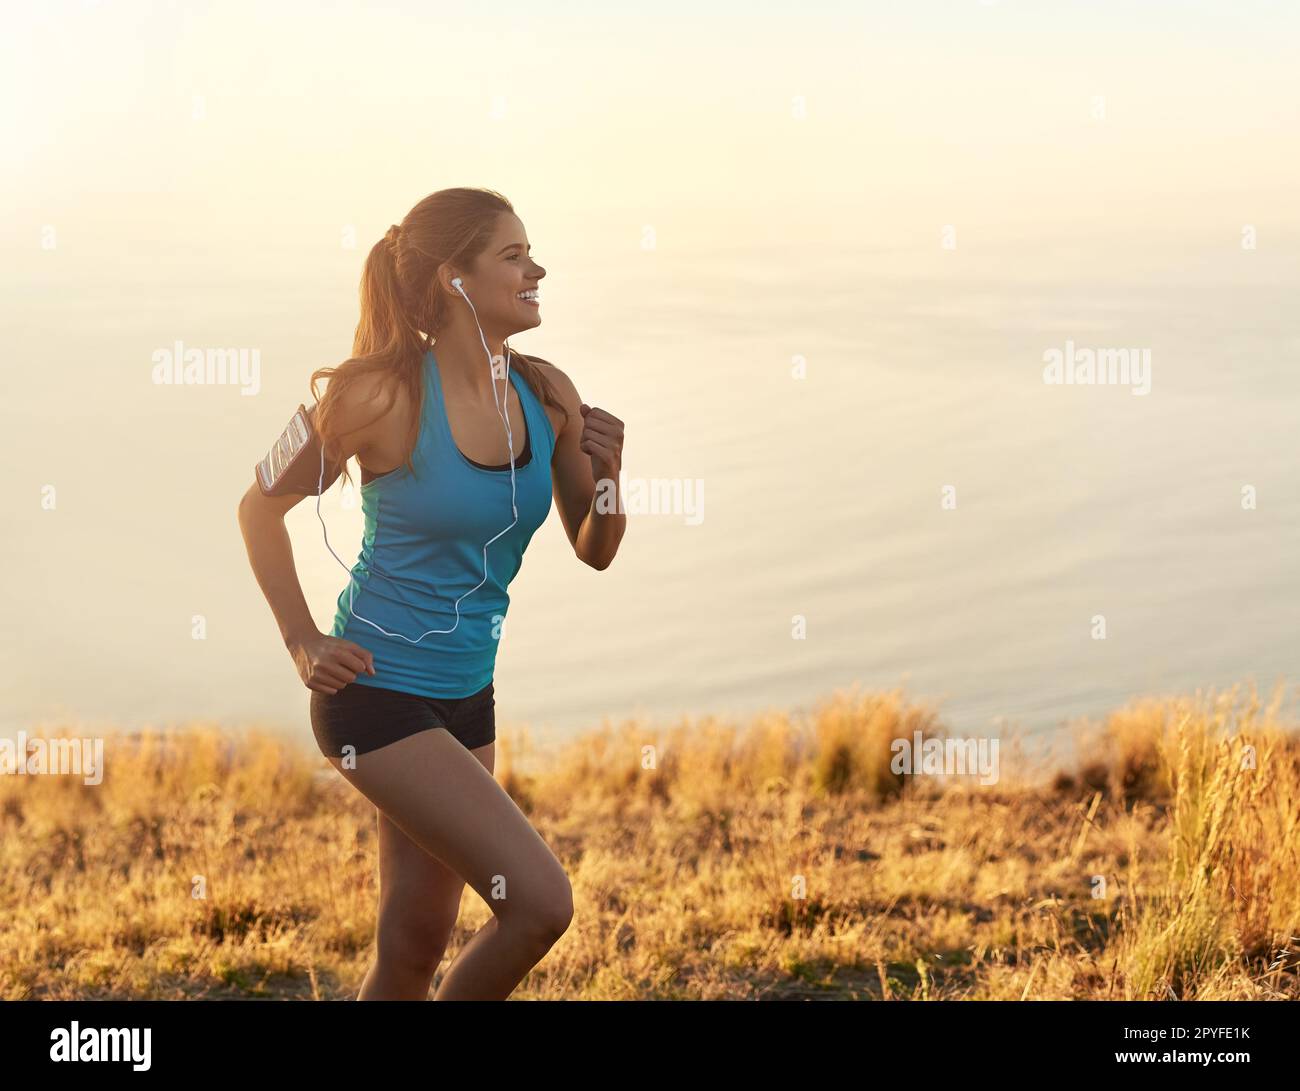 Steh auf, werde aktiv. Eine junge Frau, die beim Laufen Musik hört. Stockfoto